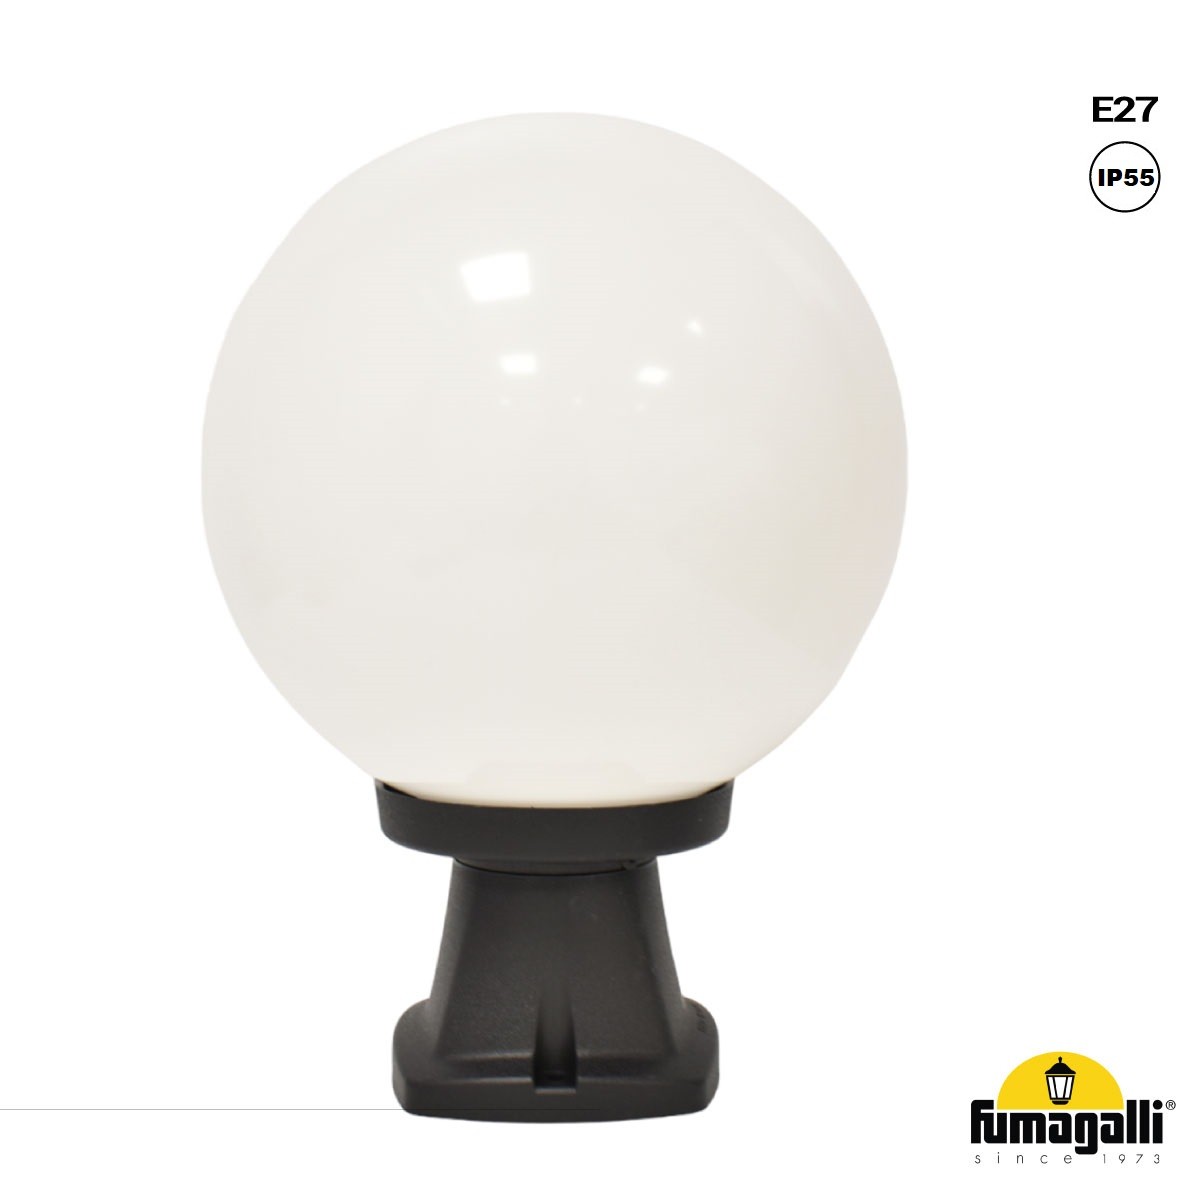 Lanterna da terra con sfera FUMAGALLI "Disma/G250" - E27